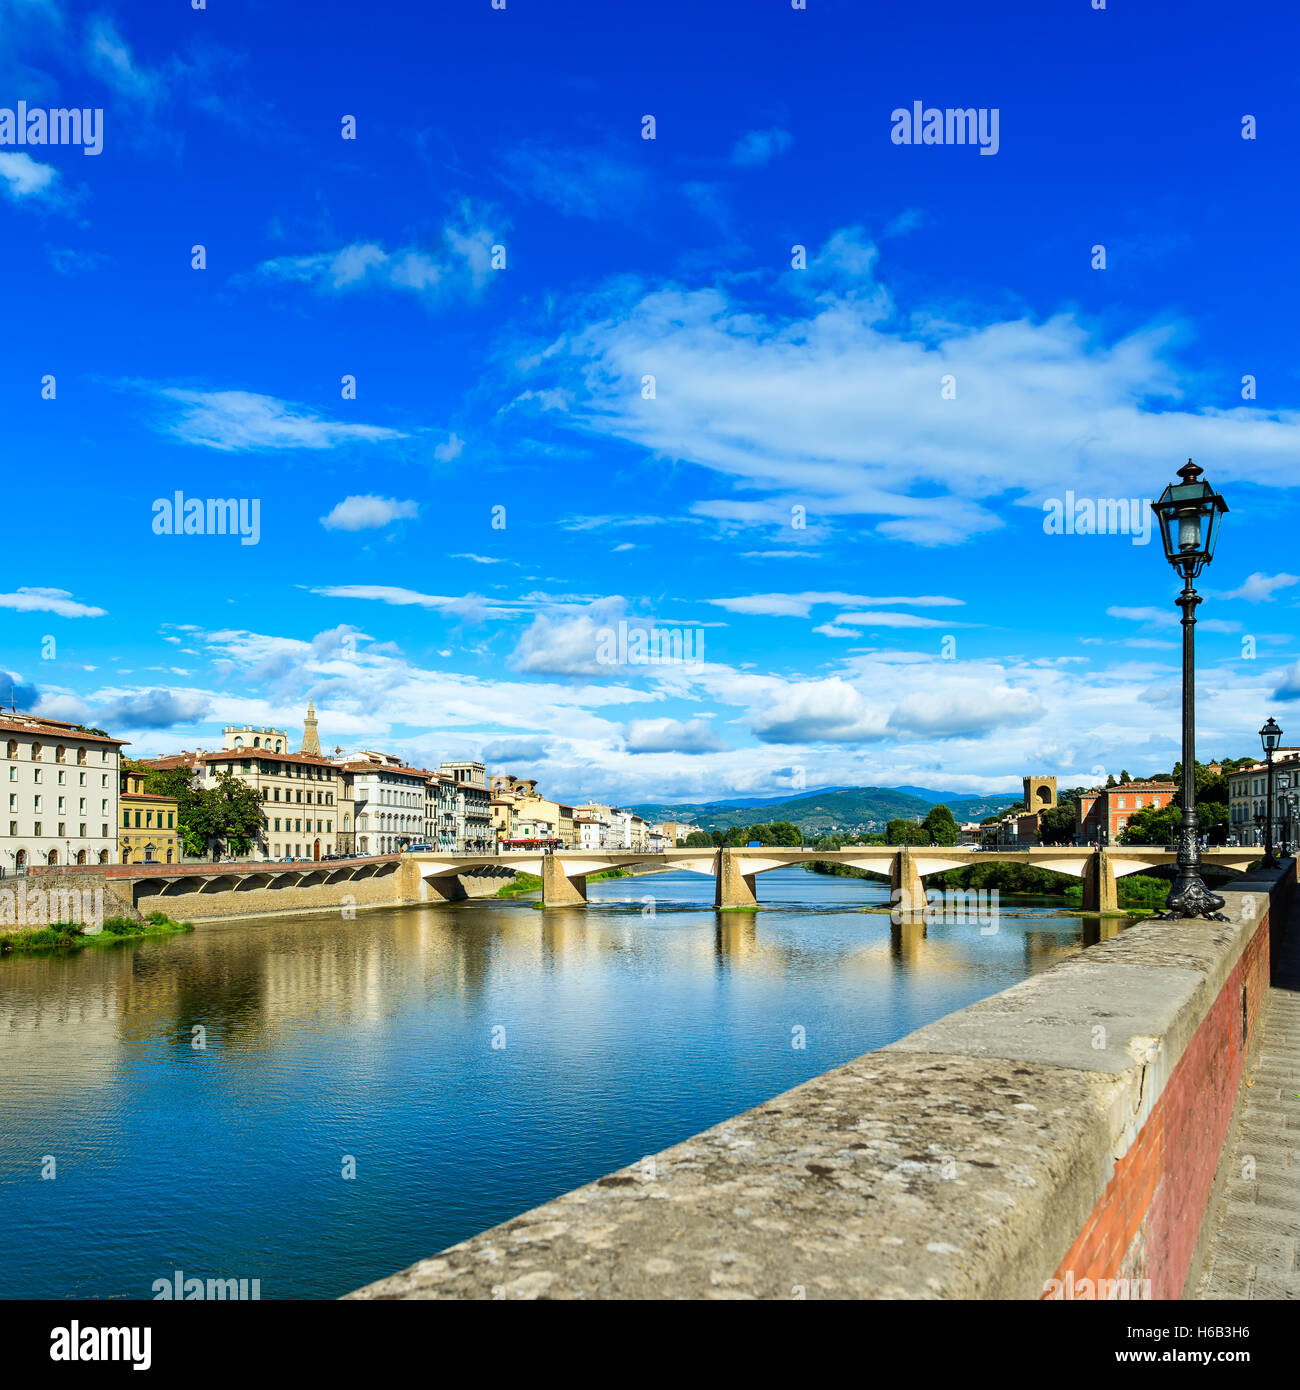 Florenz oder Firenze, Ponte Alle Grazie Brücke Wahrzeichen am Fluss Arno, Sonnenuntergang Landschaft mit Reflexion. Toskana, Italien. Lange exp Stockfoto